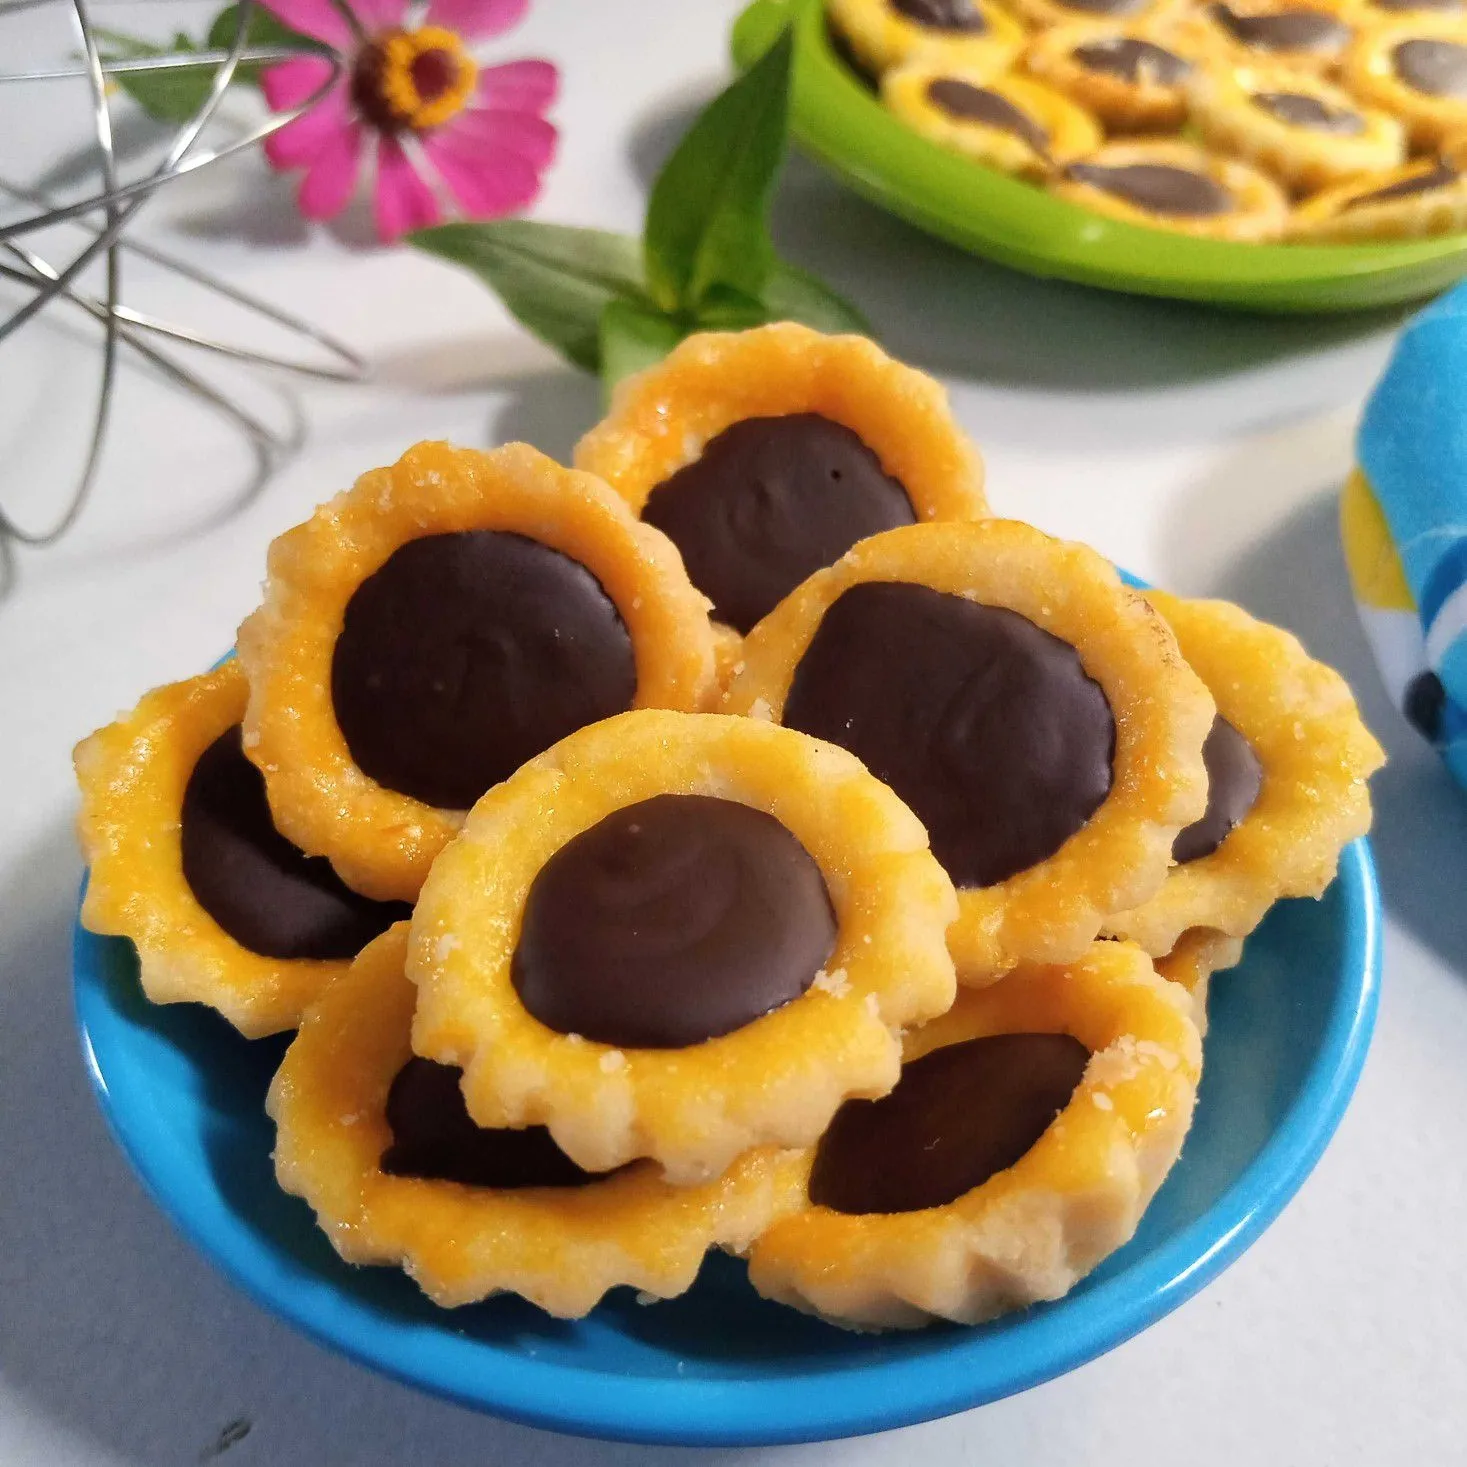 Choco Pie Cookies #JagoMasakMinggu11